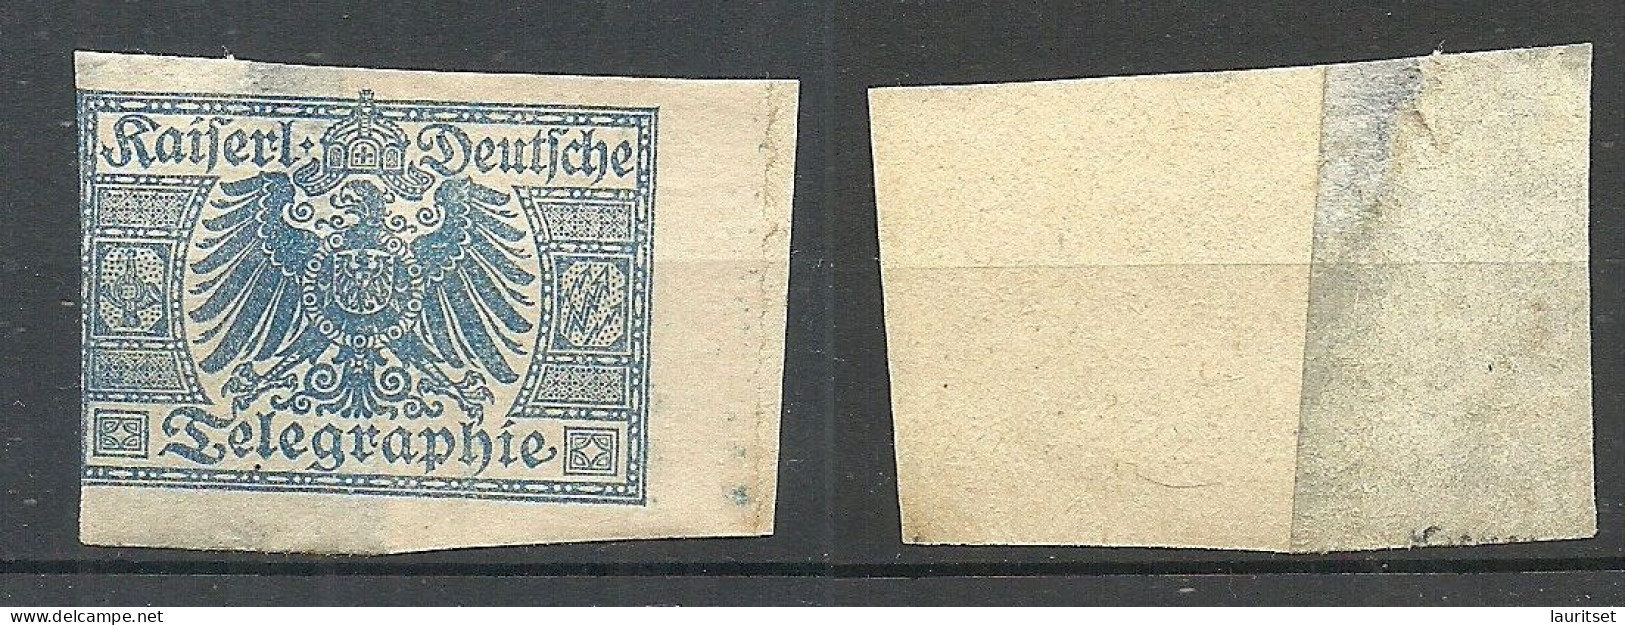 Germany DEUTSCHES REICH Telegraphmarke Telegraph Telegraphie (*) - Unused Stamps